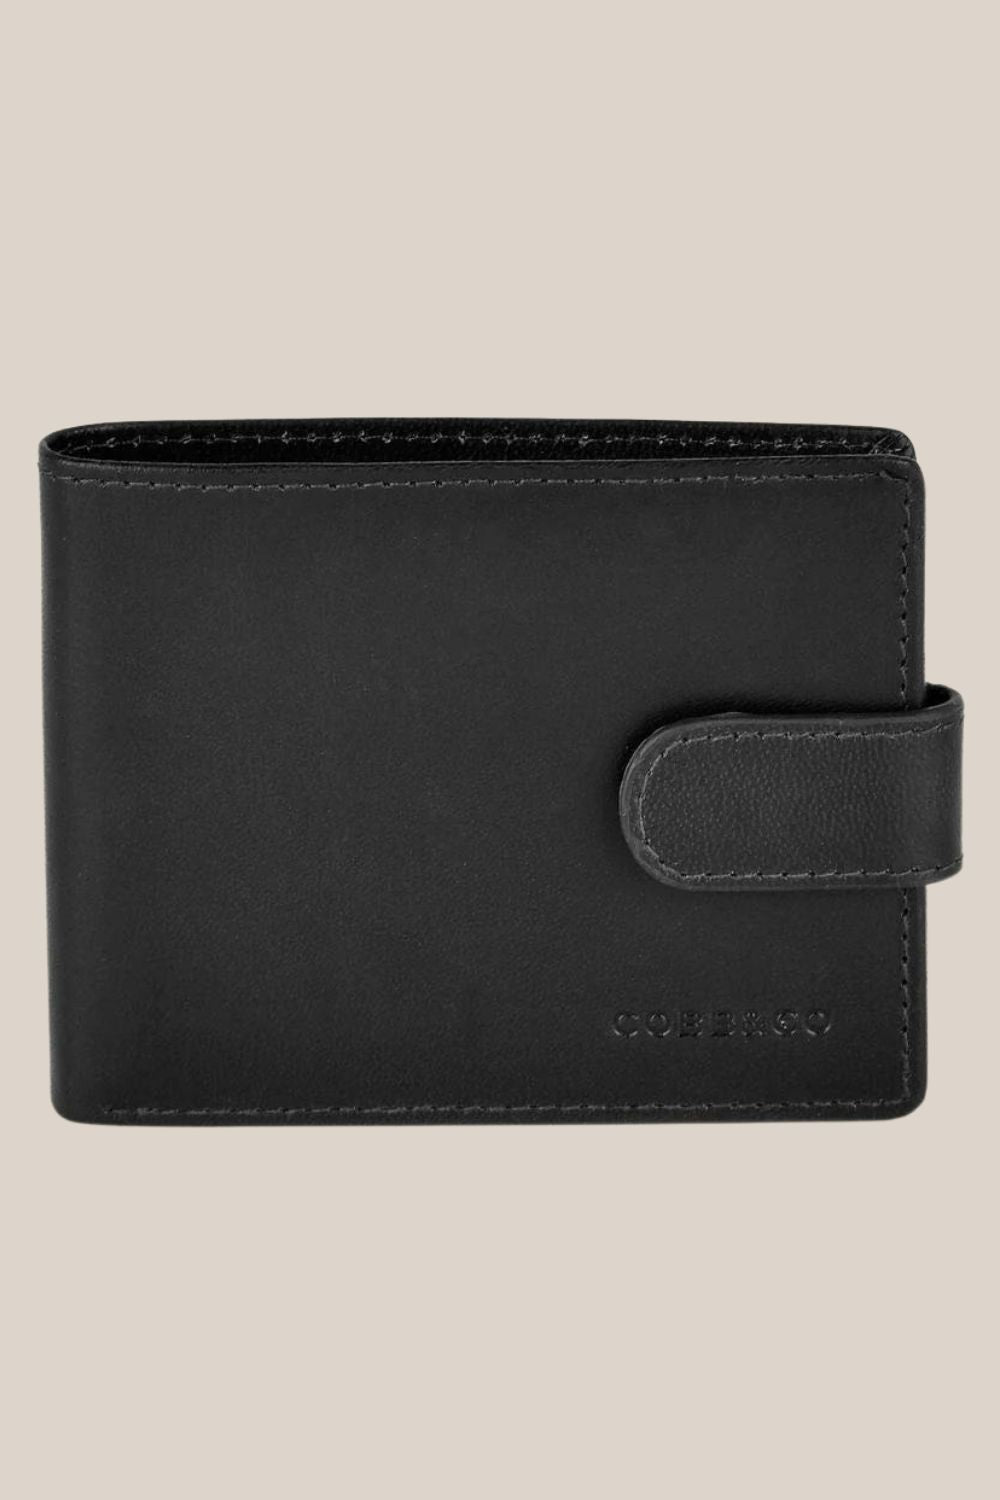 Cobb & Co Petracca RFID Mens Wallet